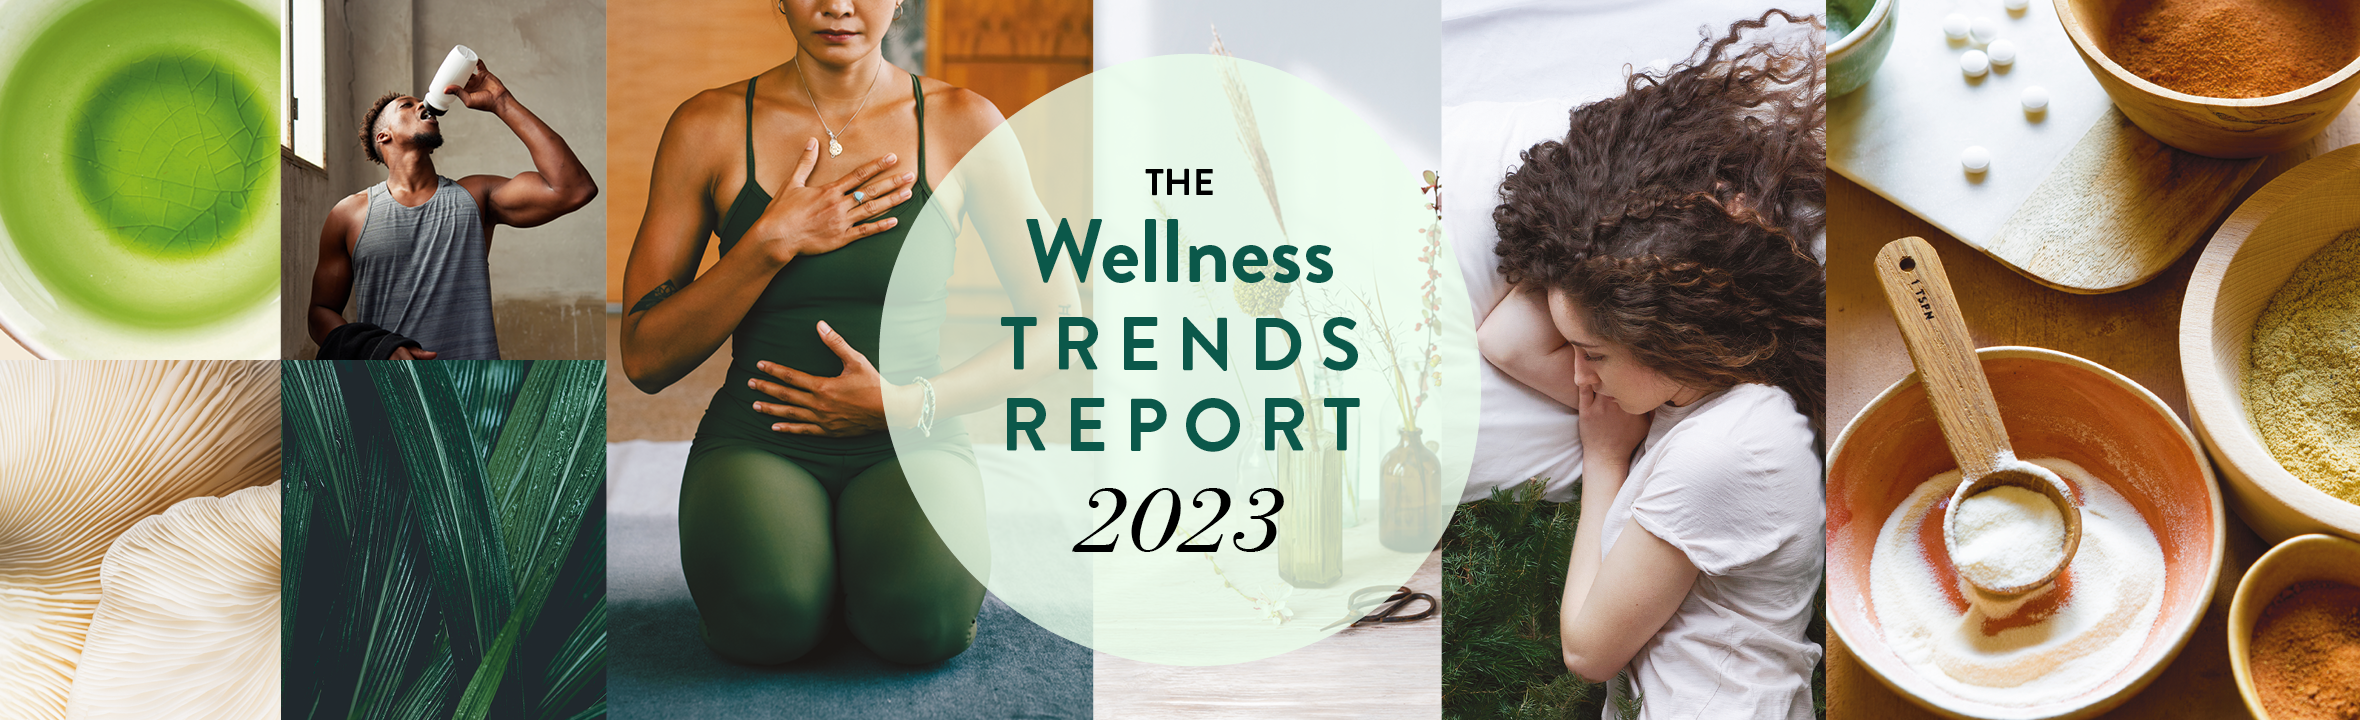 wellness trends report 2023